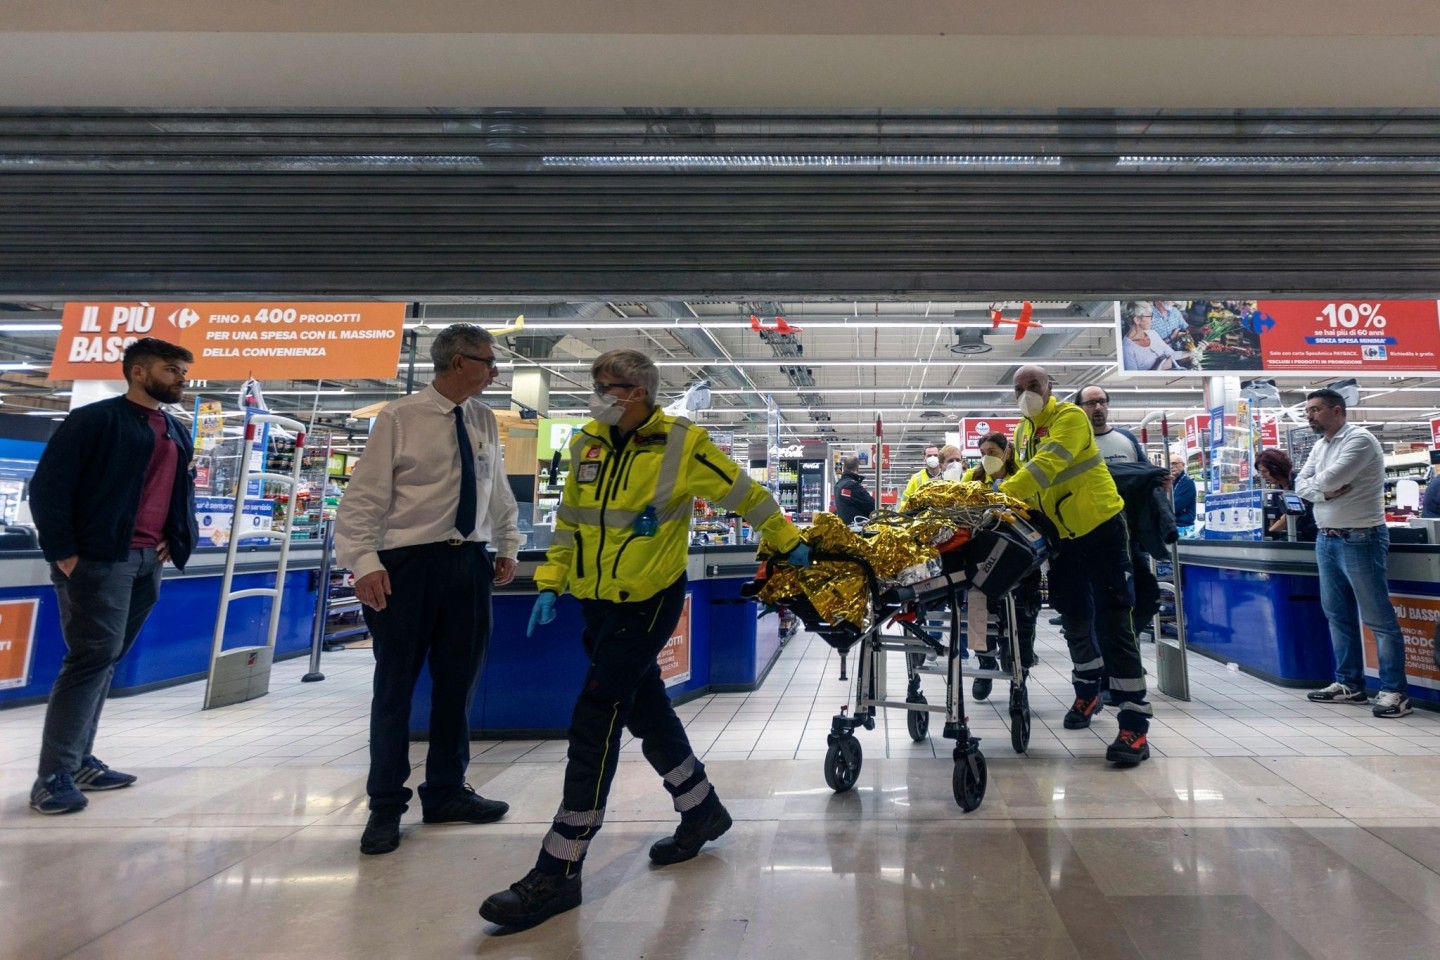 Rettungskräfte transportieren eine verletzte Person aus dem Supermarkt.